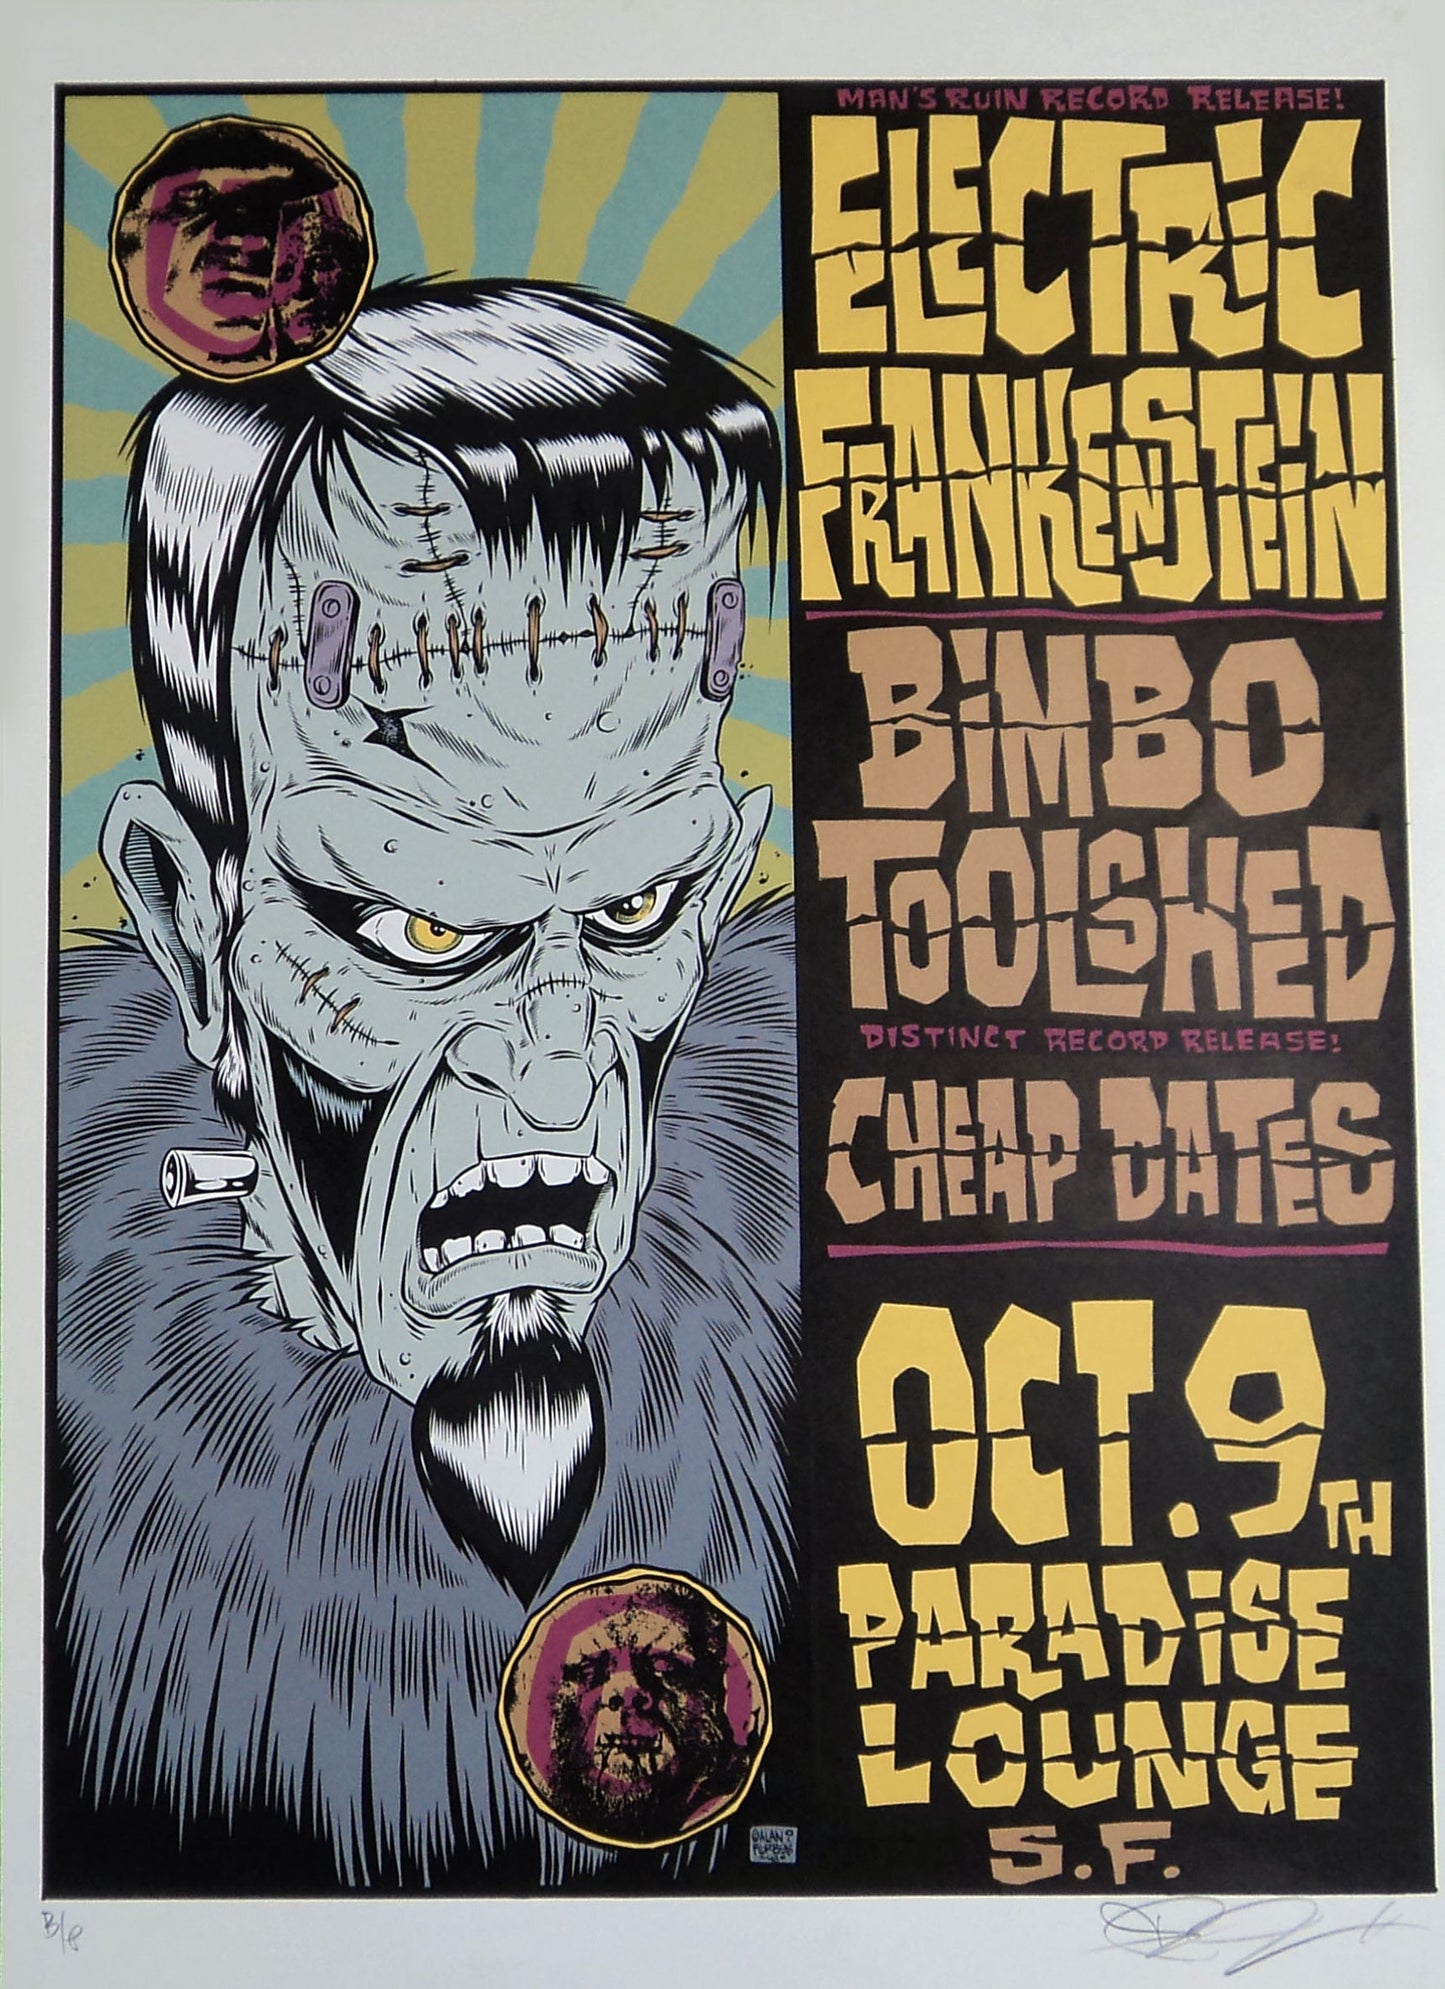 Alan Forbes - 1999 - Electric Frankenstein Concert Poster